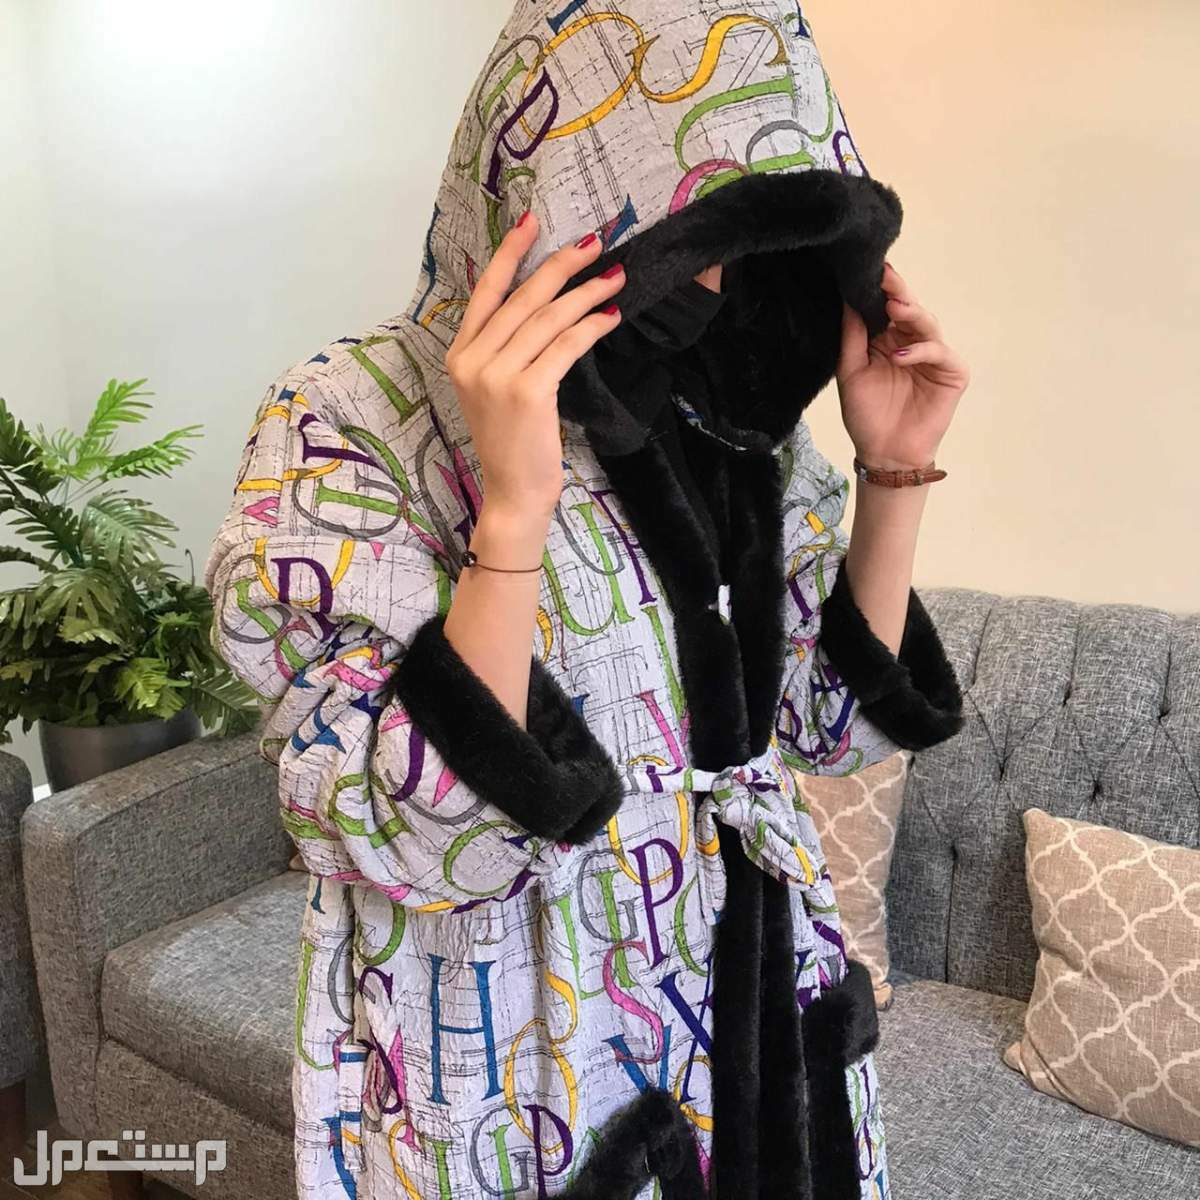 اهدي زوجتك هدية الشتاء # فروه على شكل فستان ناعم